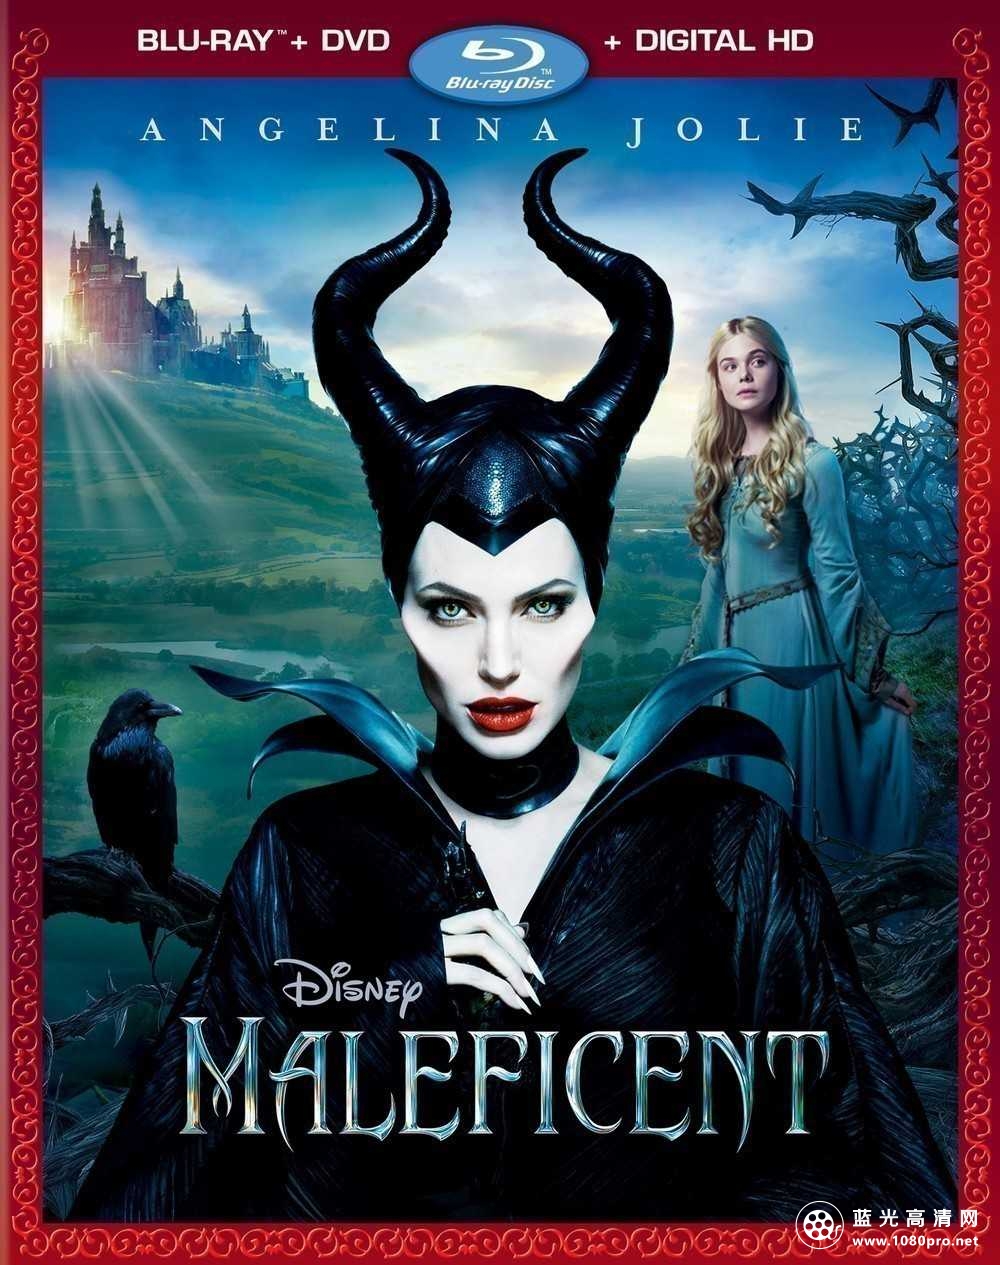 沉睡魔咒/黑法魔女/睡美人外传[国/英]Maleficent.2014.BluRay.720p.DTS. 2Audio.x264-CHD 4.36GB-1.jpg